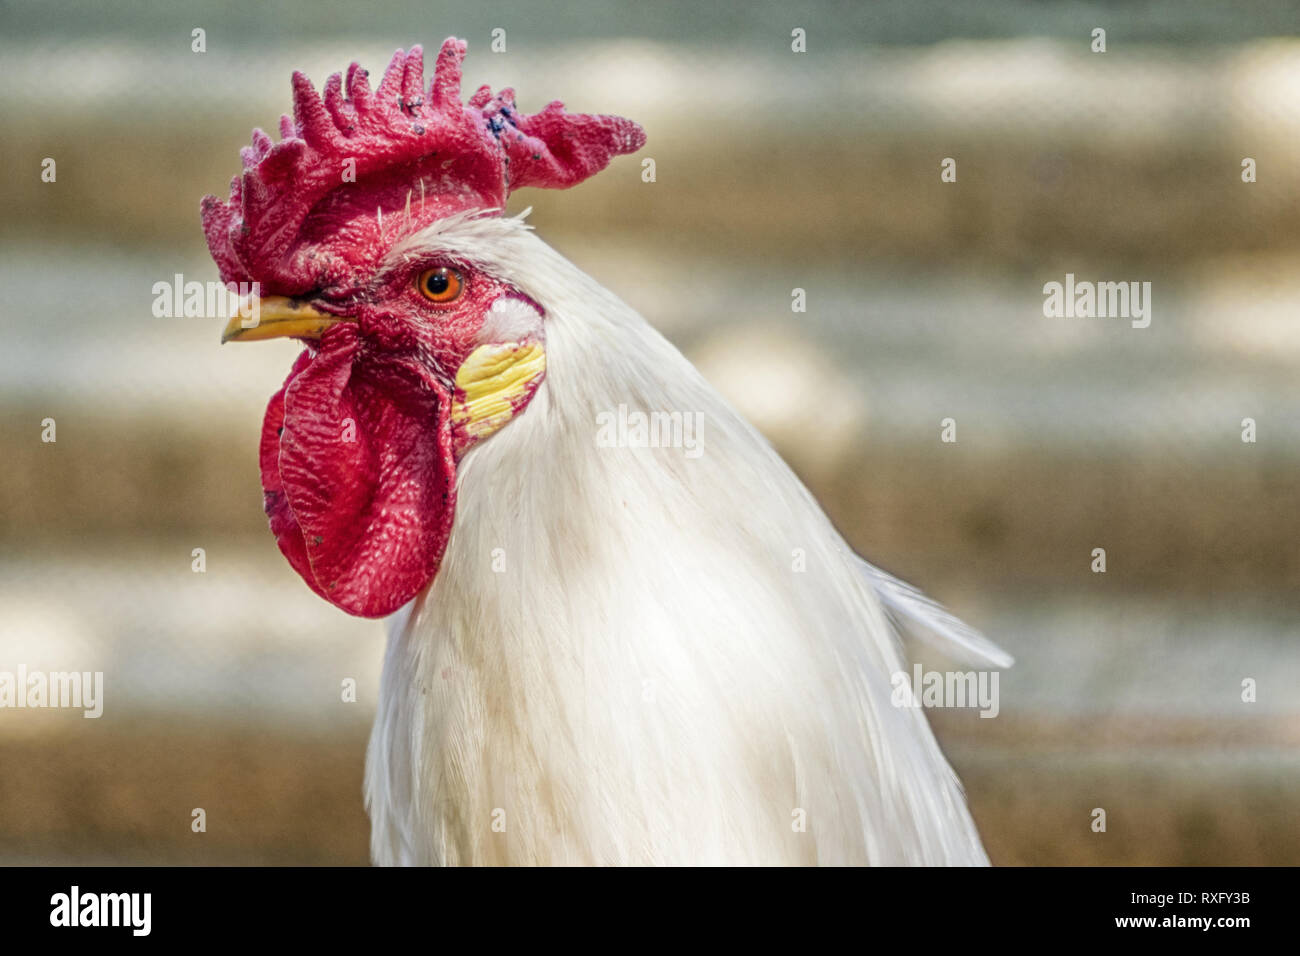 Huhn freilaufend, Portrait mit strukturiertem Hintergrund Stock Photo